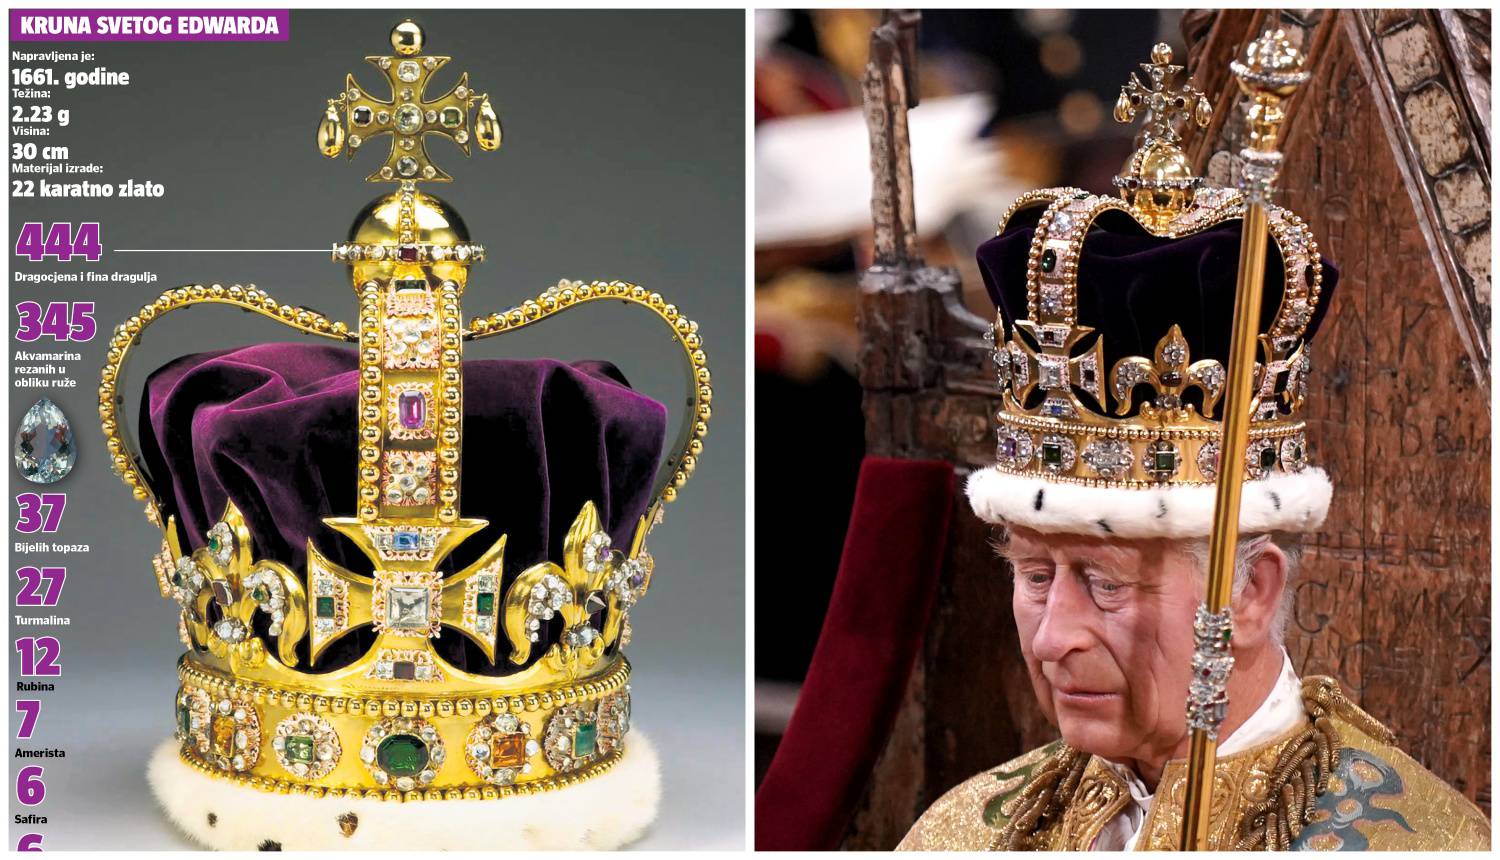 Kruna svetog Edwarda stara je 362 godine, ukrašena je s 444 dragulja, a napravljena od zlata